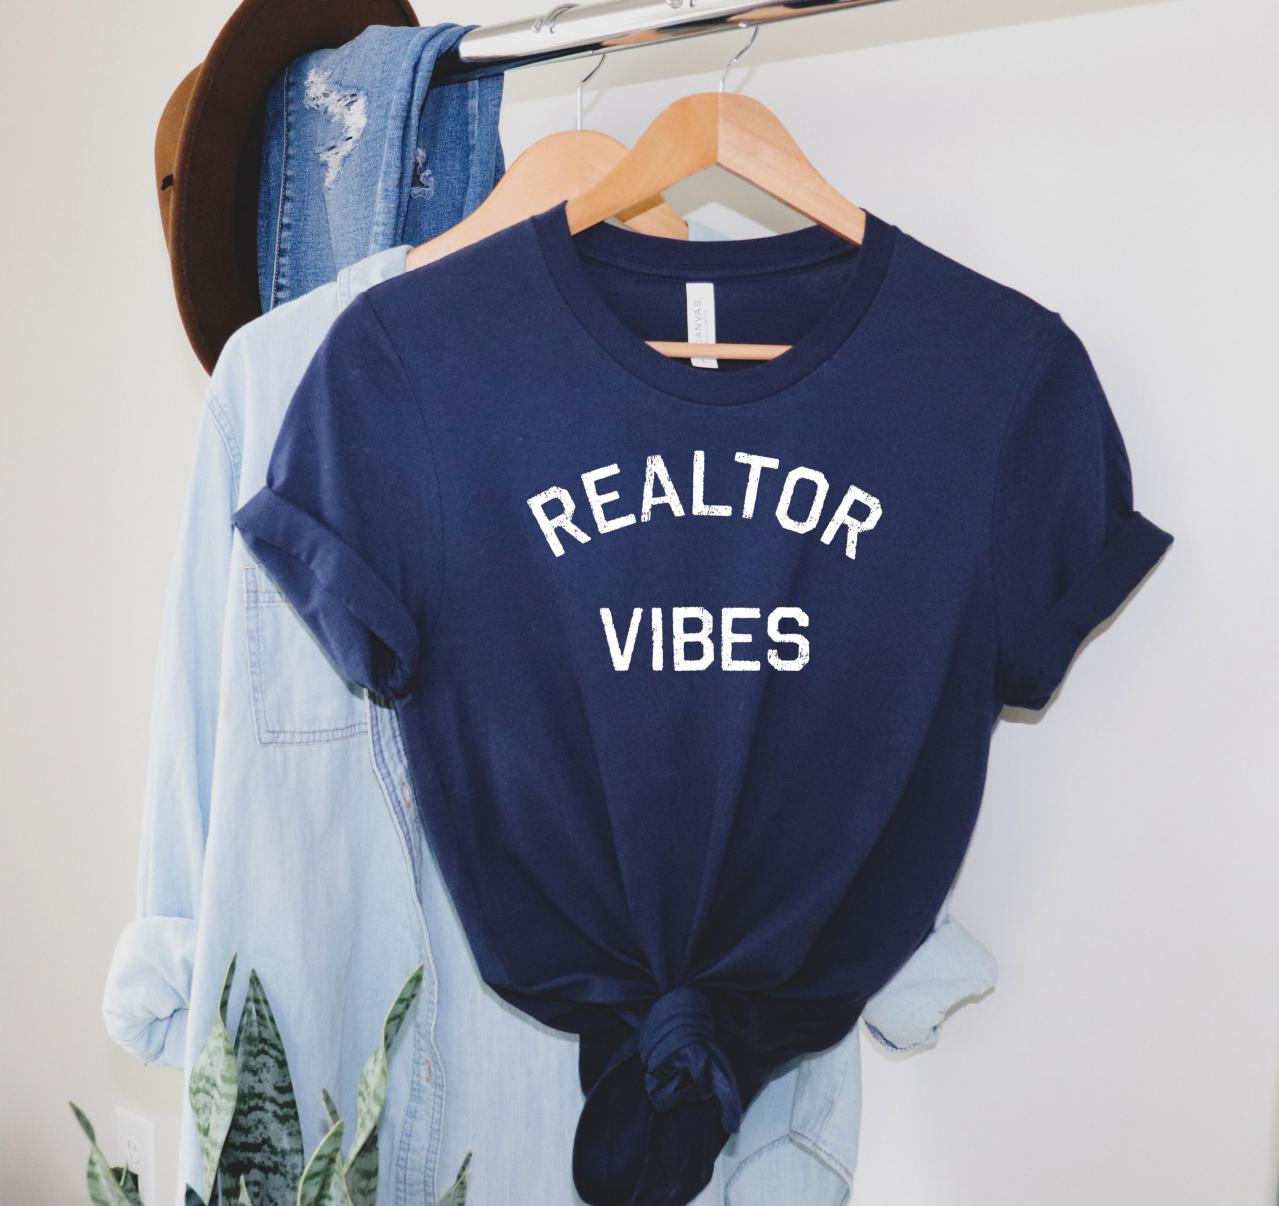 Realtor Vibes T-shirt, Realtor Shirt, Realtor Gift, Realtor Vibes, Real Estate Saying, Gift For Realtor, Realtor Top, Real Estate Shirt, Realtor